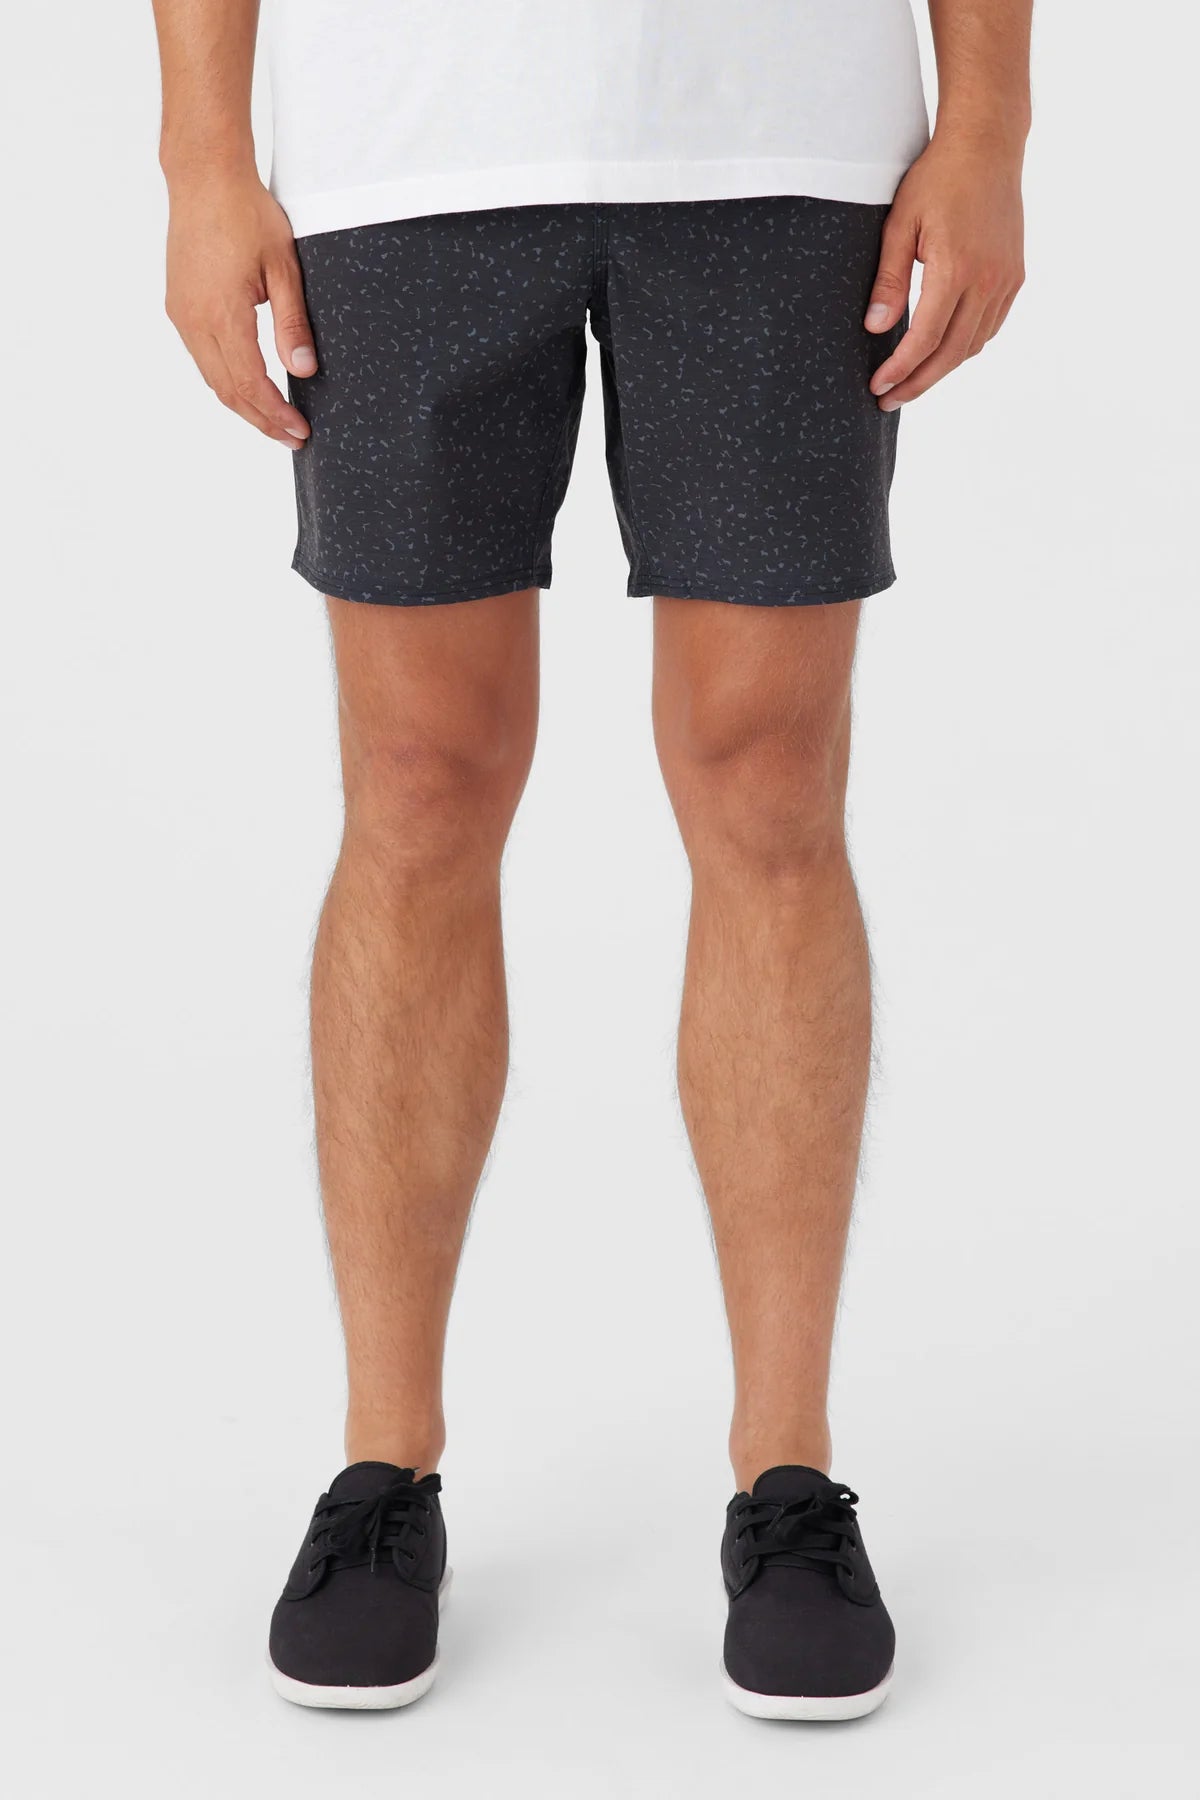 O'Neill Men's Stockton E-Waist 18" Hybrid Shorts